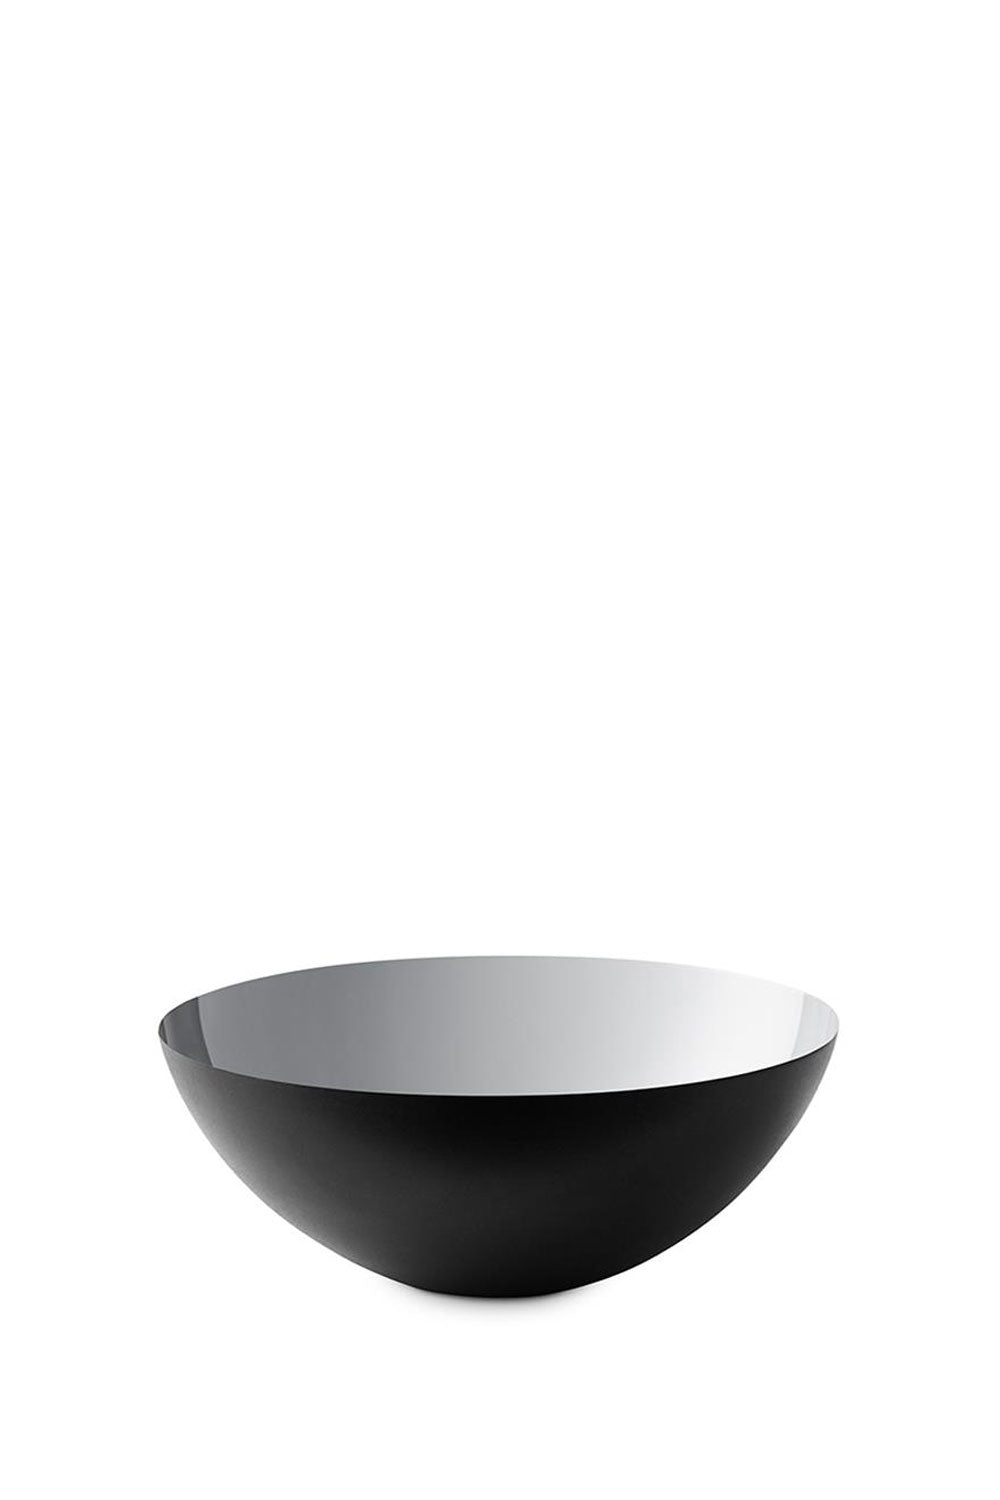 Krenit Bowl, Silver, 12.5cm